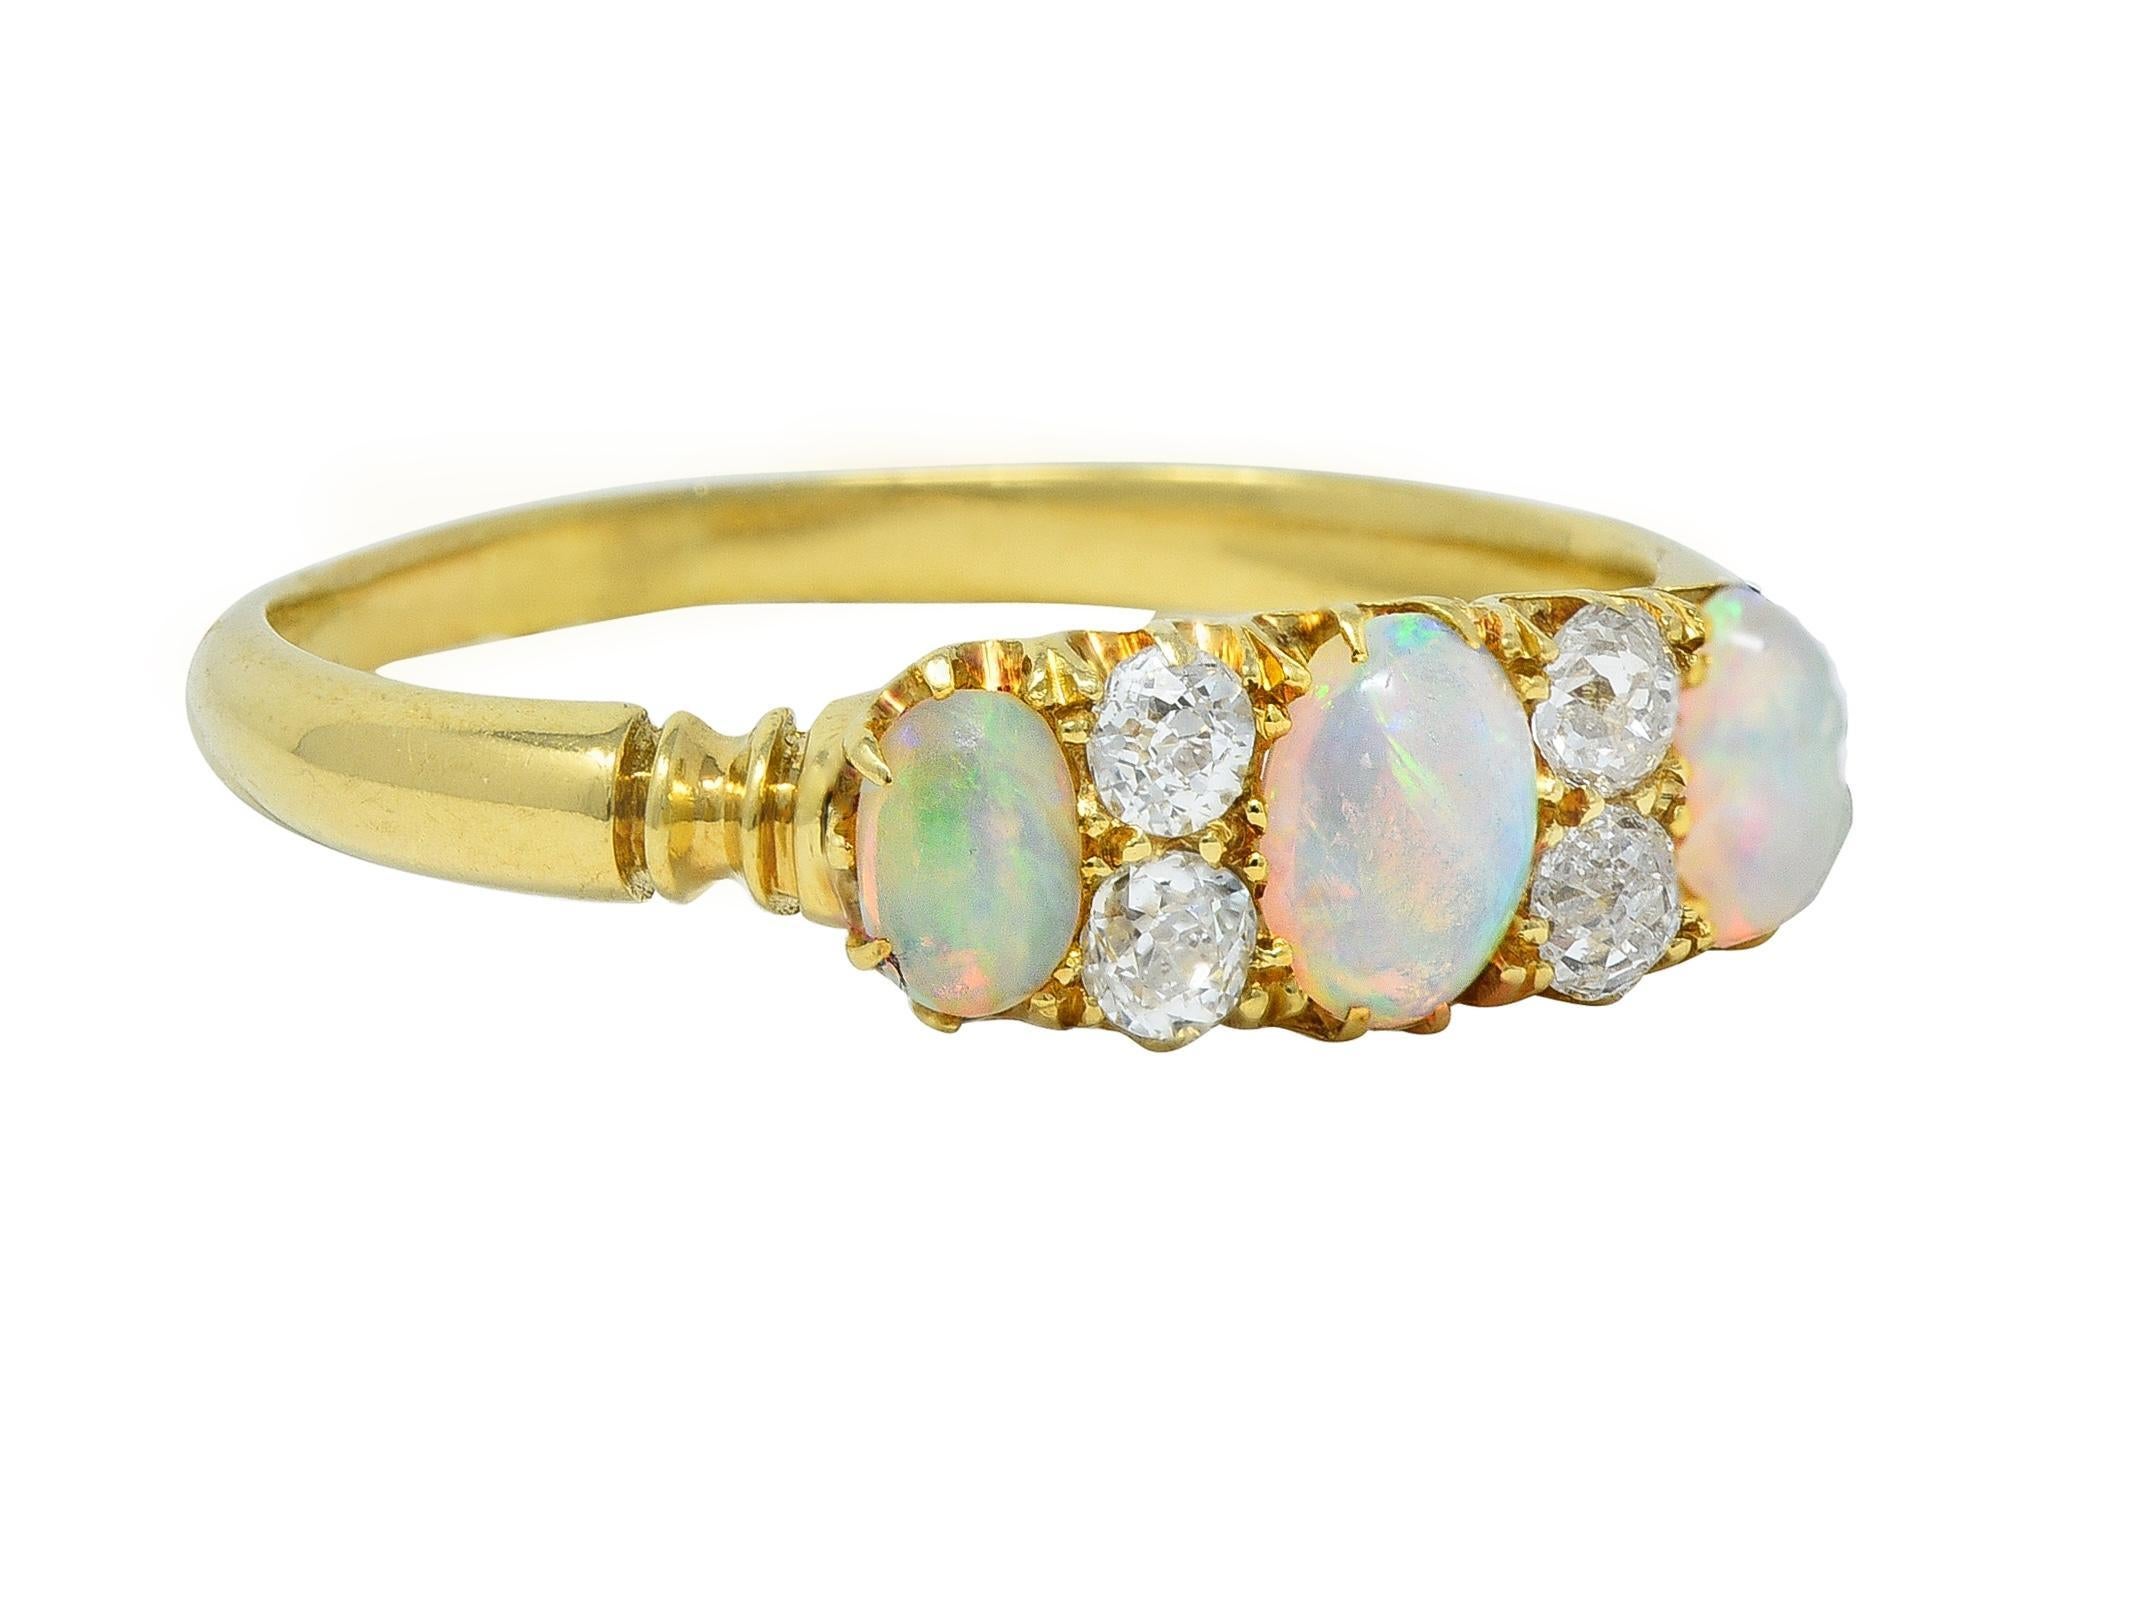 Mit drei ovalen Opal-Cabochons, die von Osten nach Westen gefasst sind
Abgestuft und in Größen von 2,5 4,5 mm bis 3,5 x 5,0 mm 
Transluzentes Weiß in der Körperfarbe mit spektralem Farbenspiel
Akzentuiert durch Diamanten mit altem Minenschliff, die